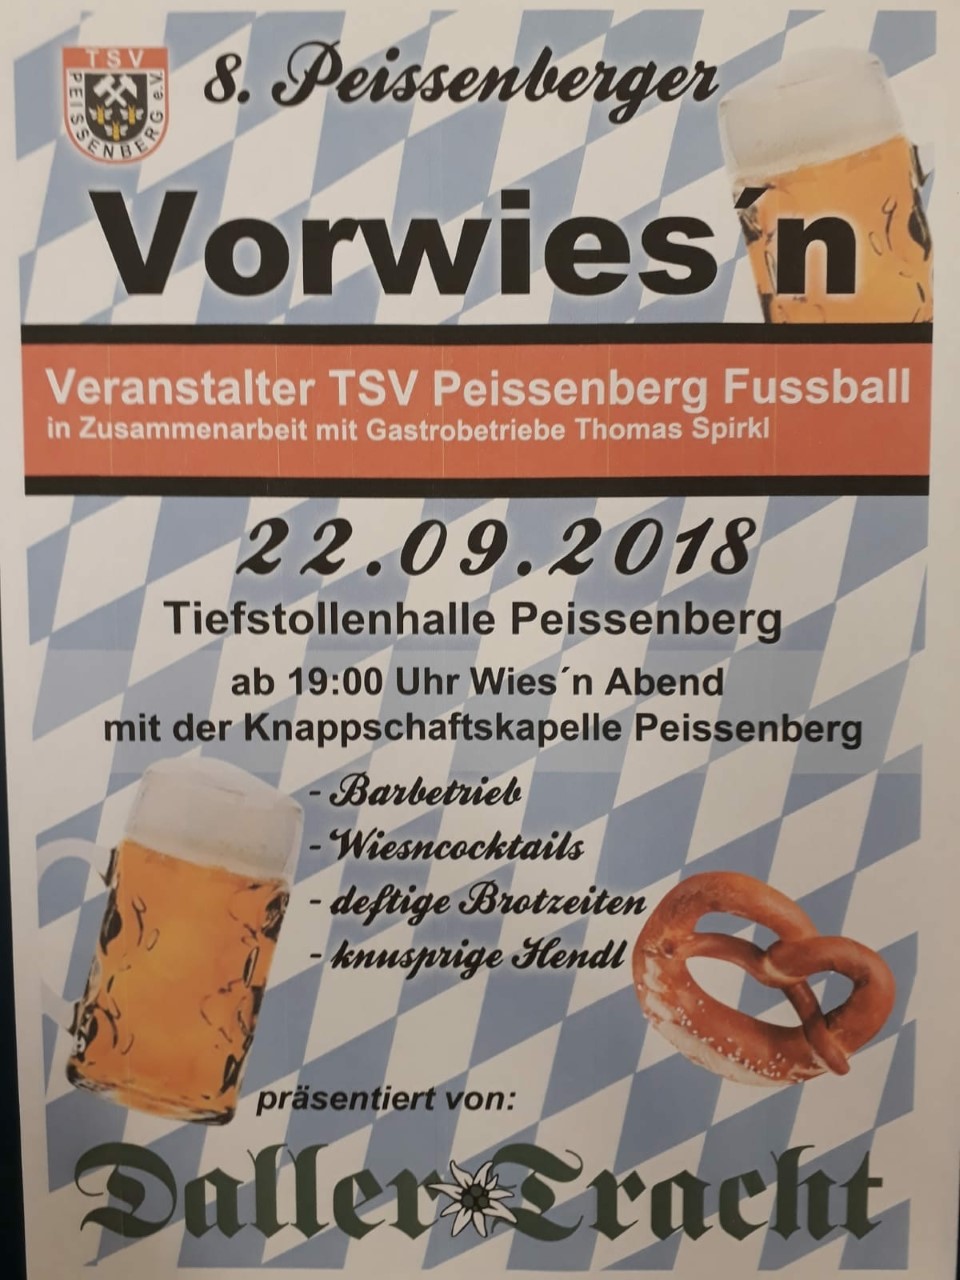 Vorwiesn 2018 in Peißenberg